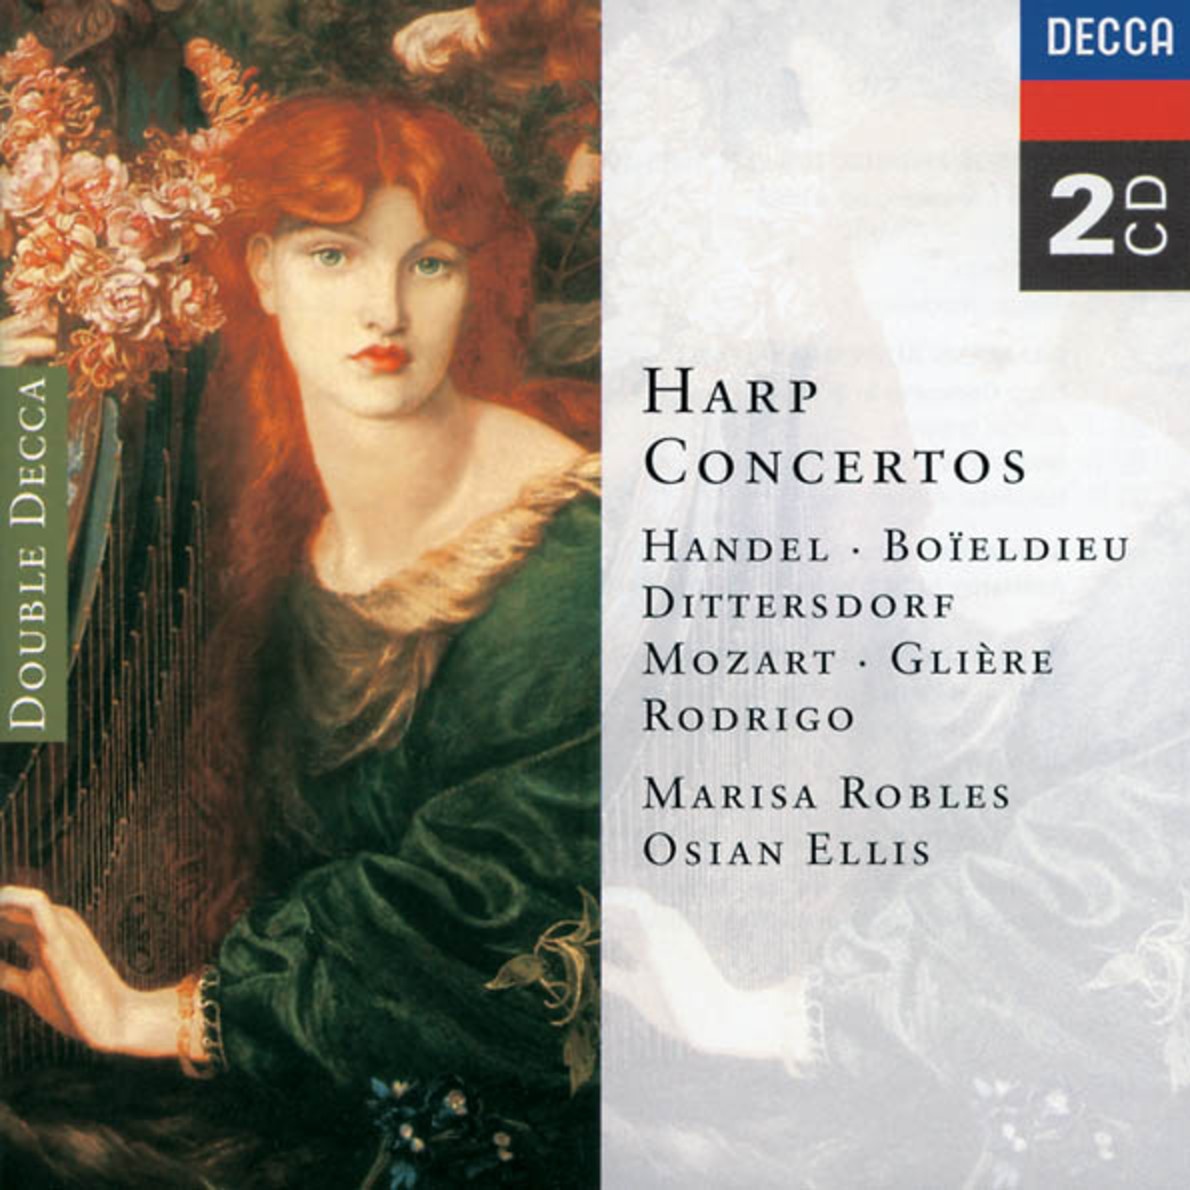 Boi ldieu: Concerto for Harp and Orchestra in C  1. Allegro brillante